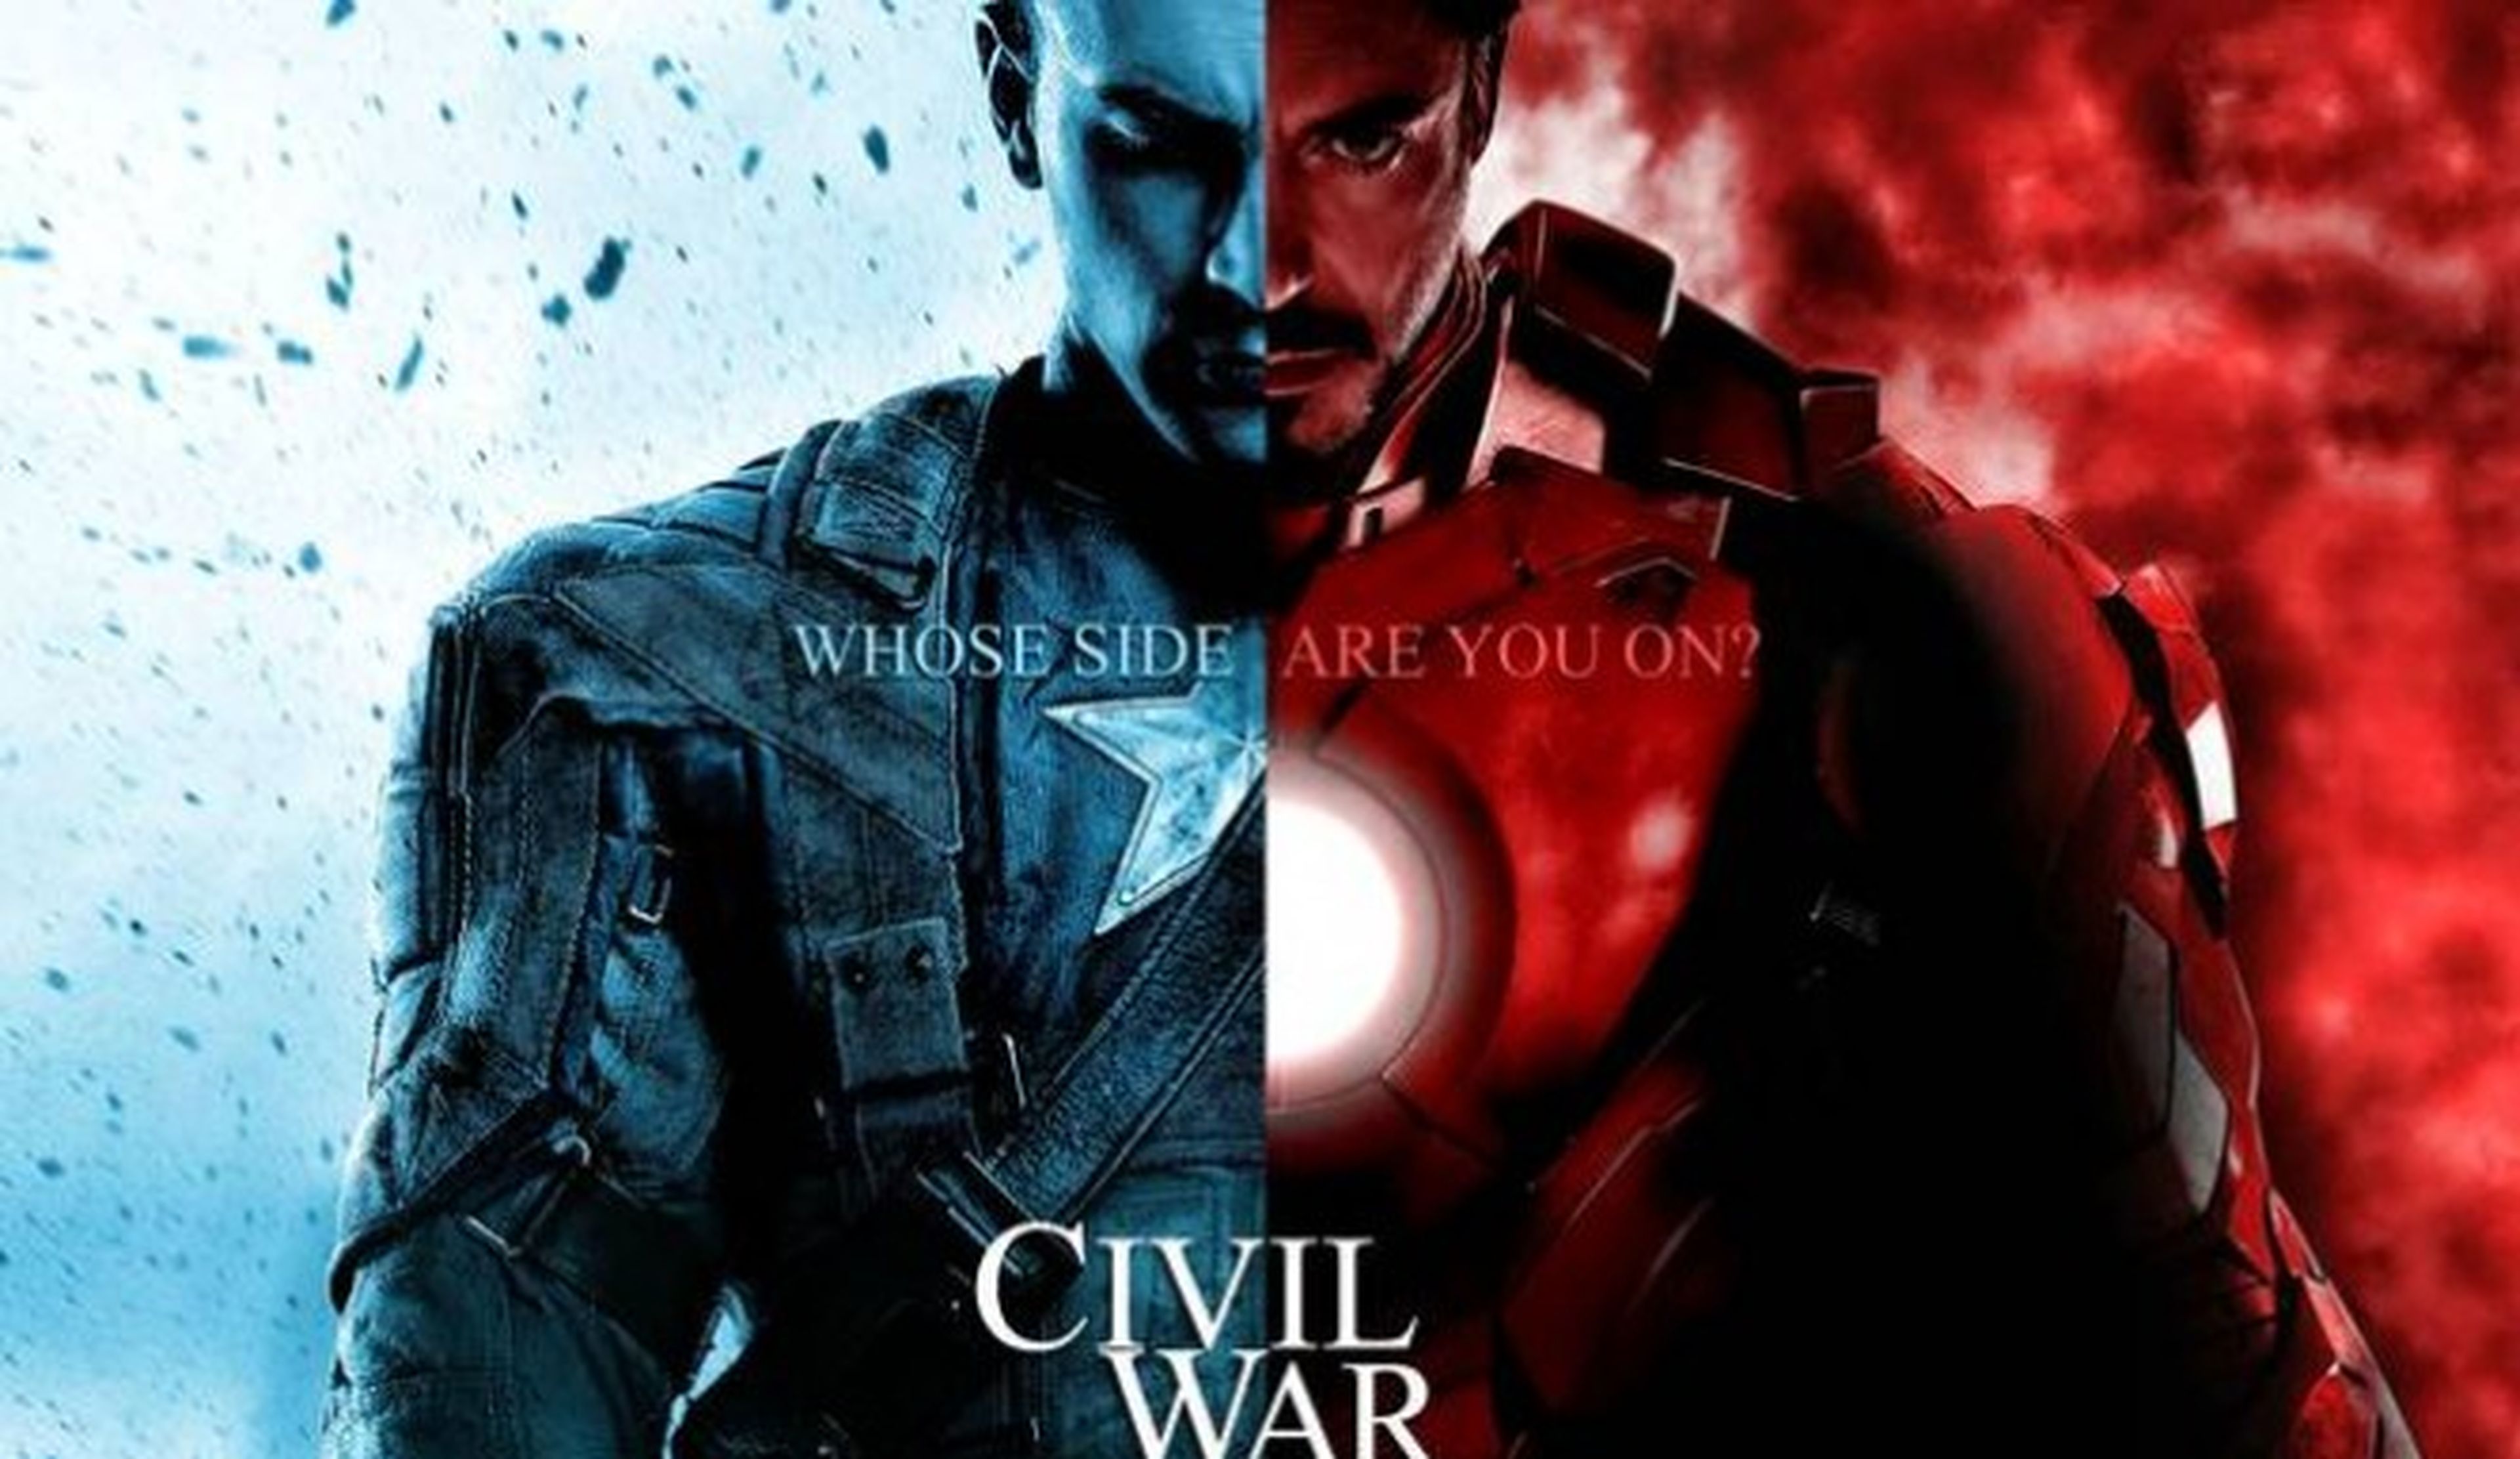 Los Vengadores: La Era de Ultron: ¿Por qué Hulk se enfrenta a Iron Man en su Hulkbuster?